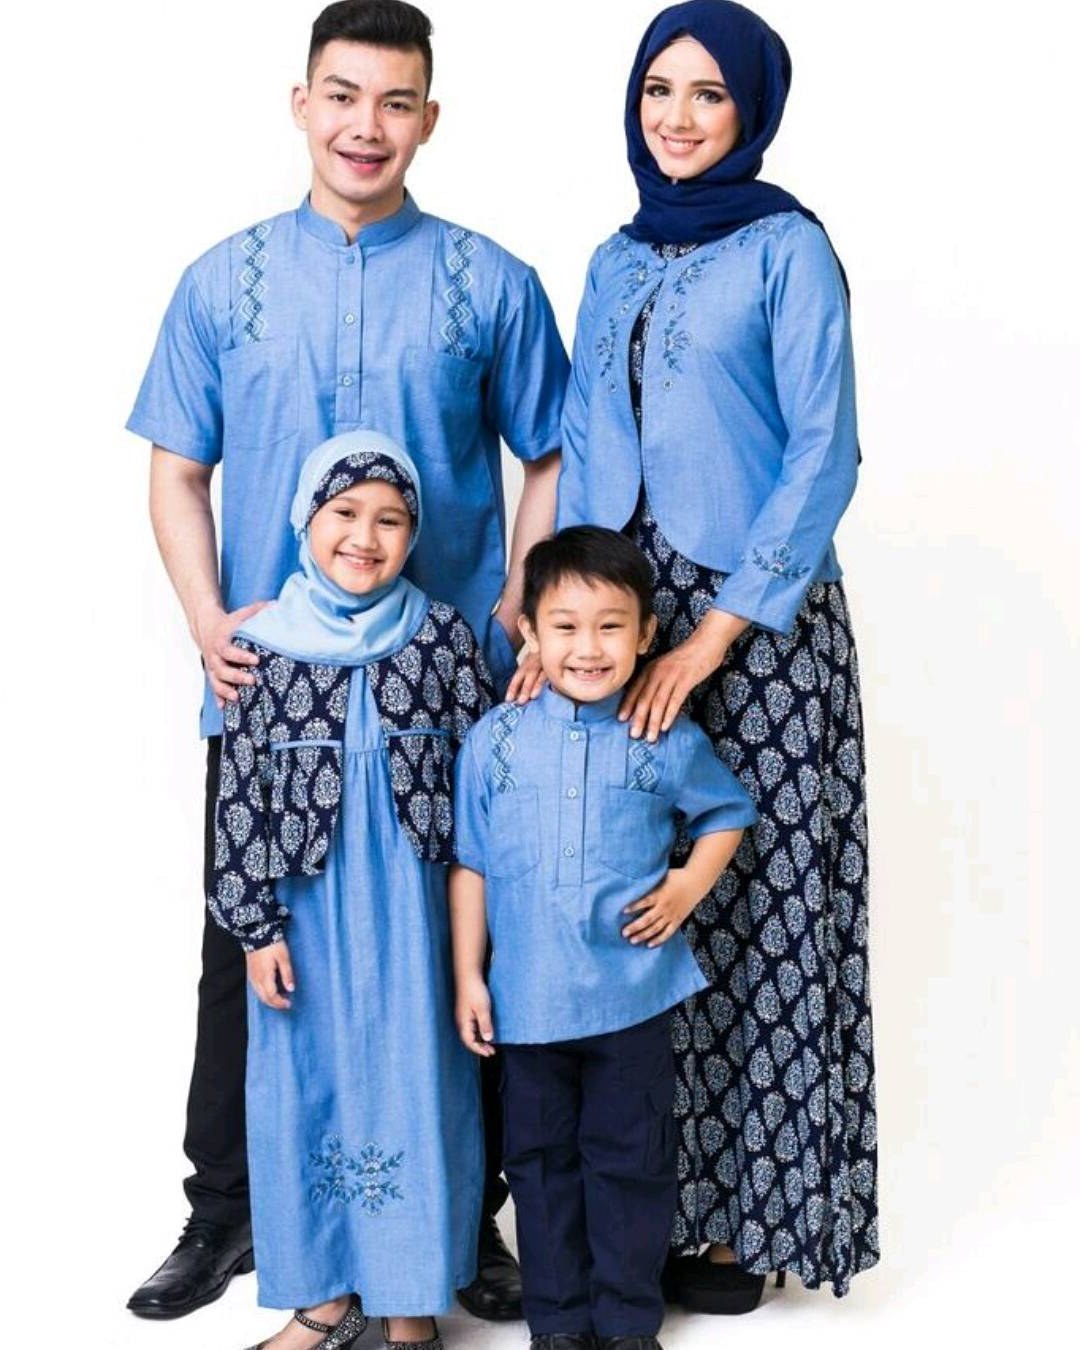 Bentuk Baju Lebaran Keluarga Terbaru Bqdd Model Baju Keluarga Untuk Hari Raya Lebaran 2018